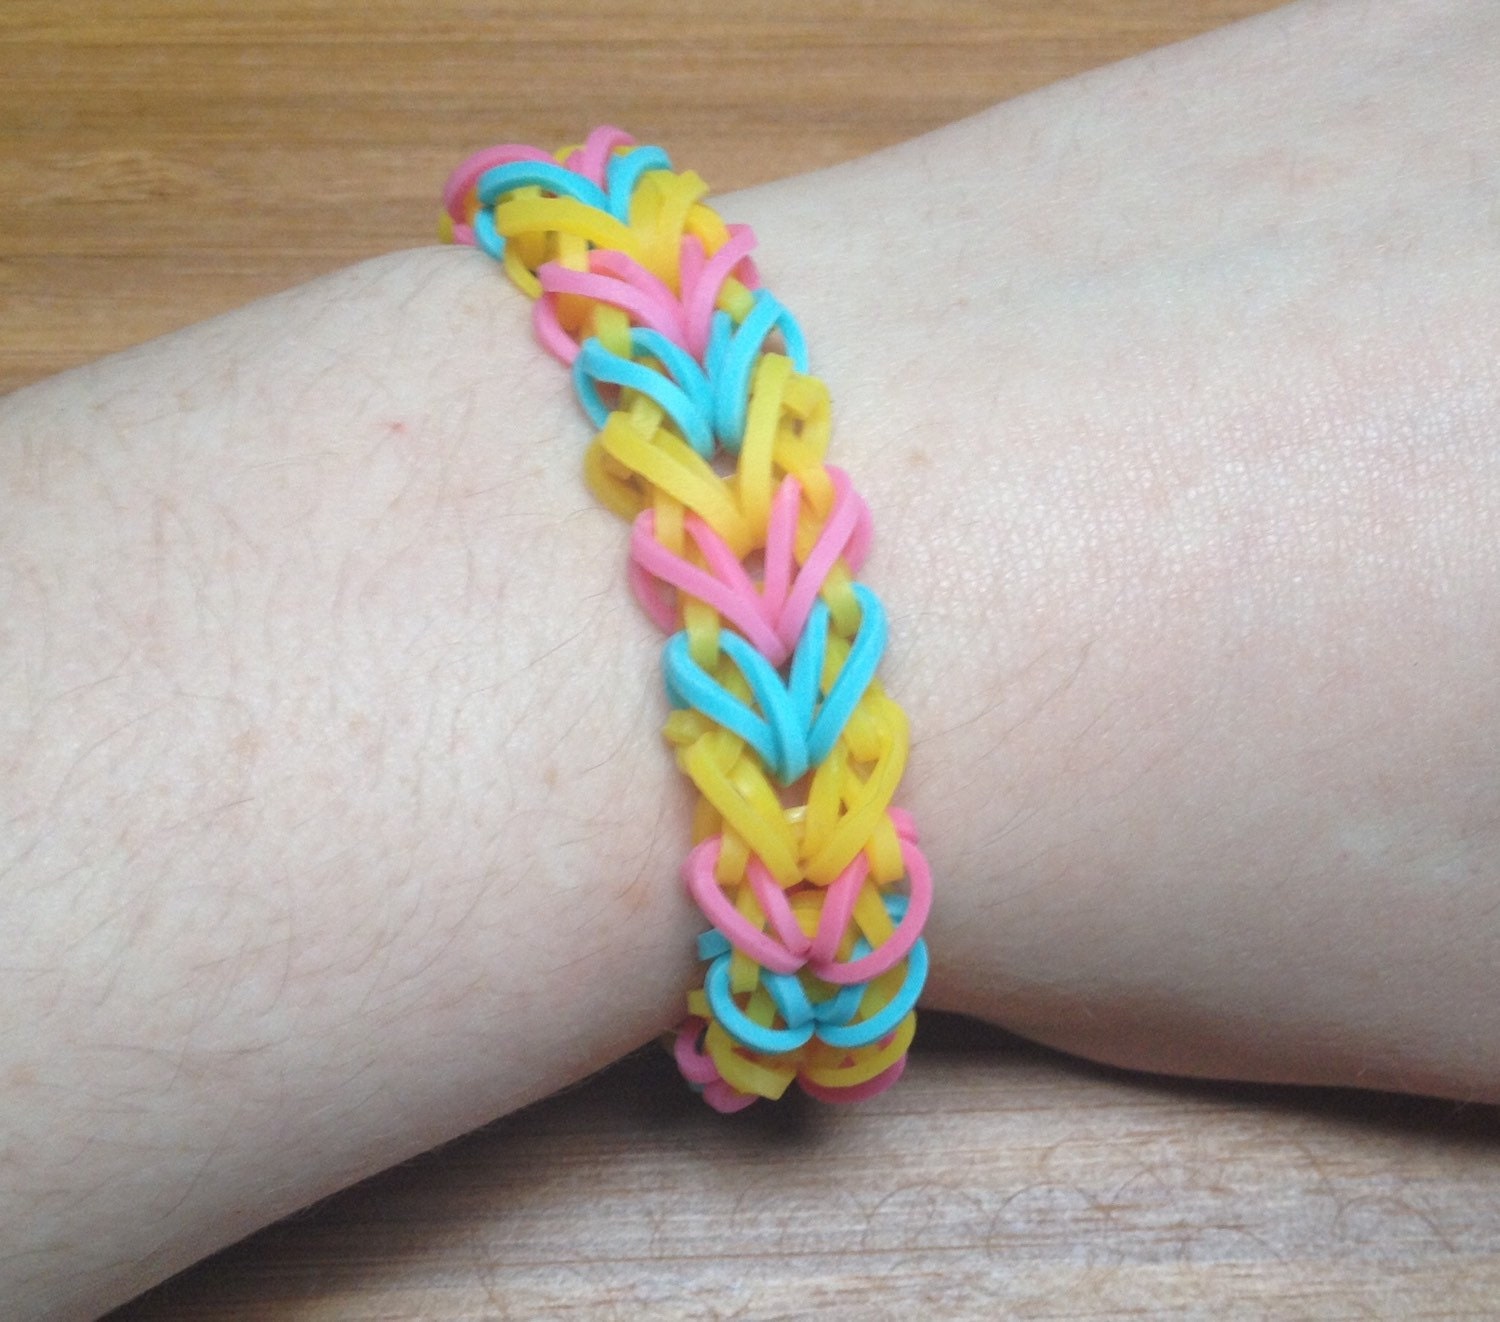 Pansexual pride bracelet / Arrow style rainbow loom by PrideLooms